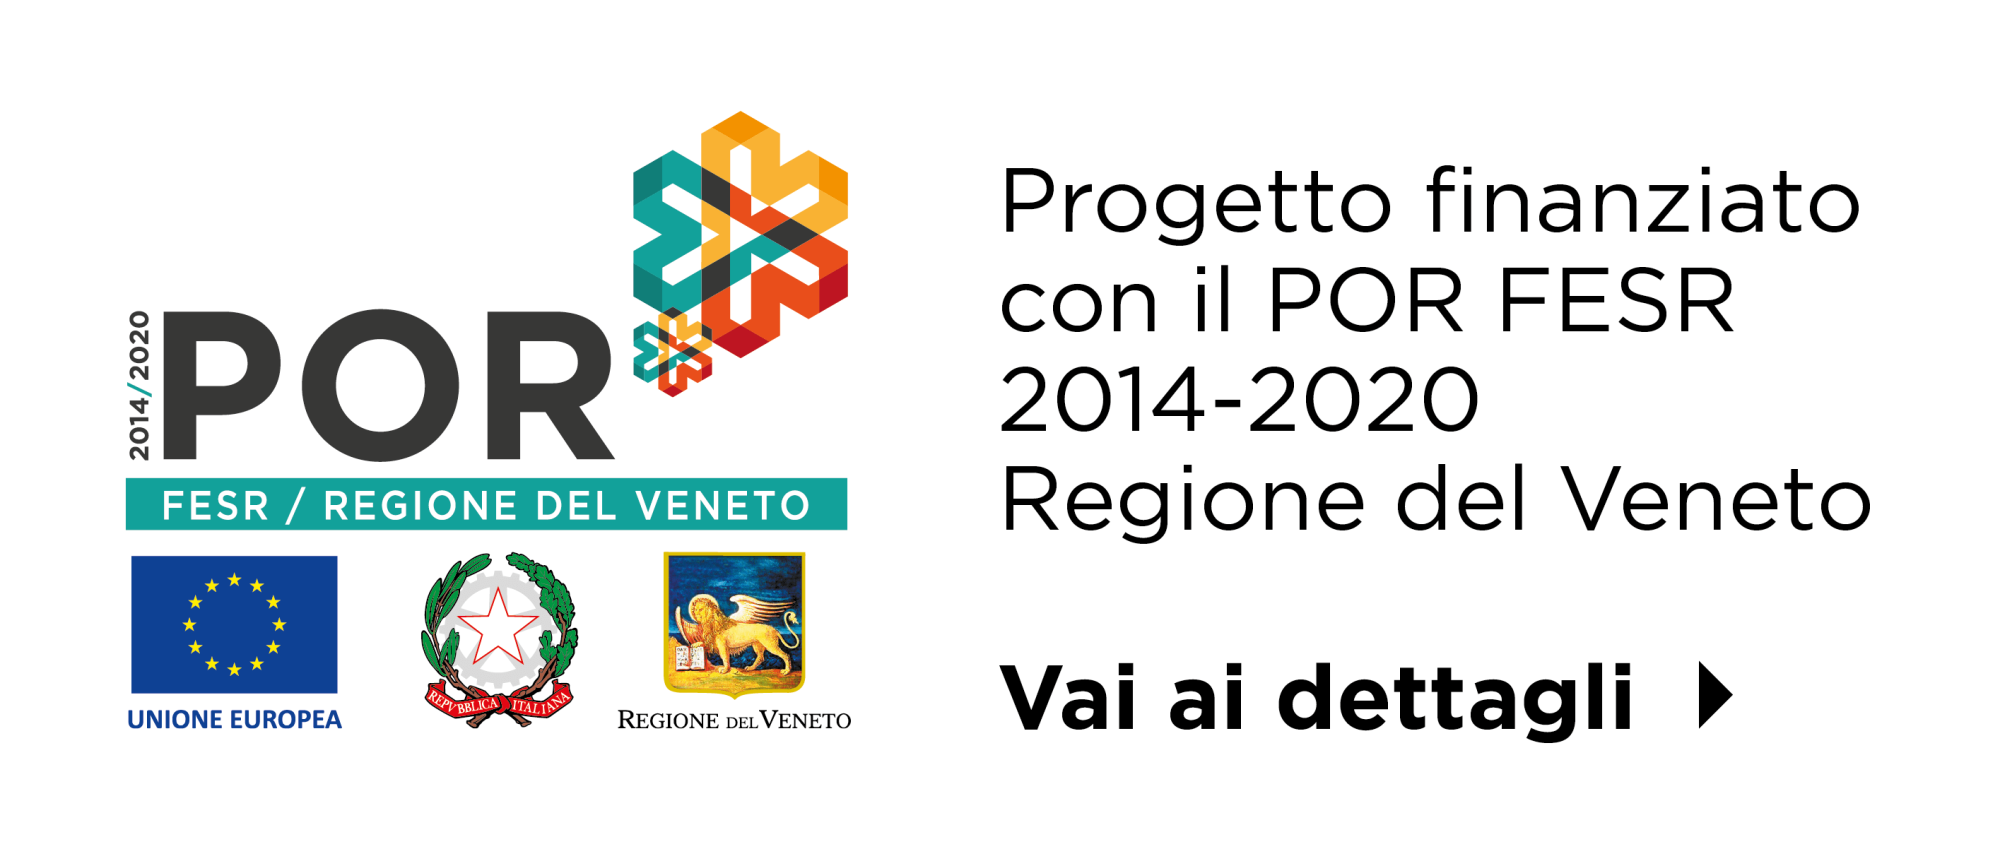 Progetto finanziato con il POR FESR 2014-2020 - Regione del Veneto